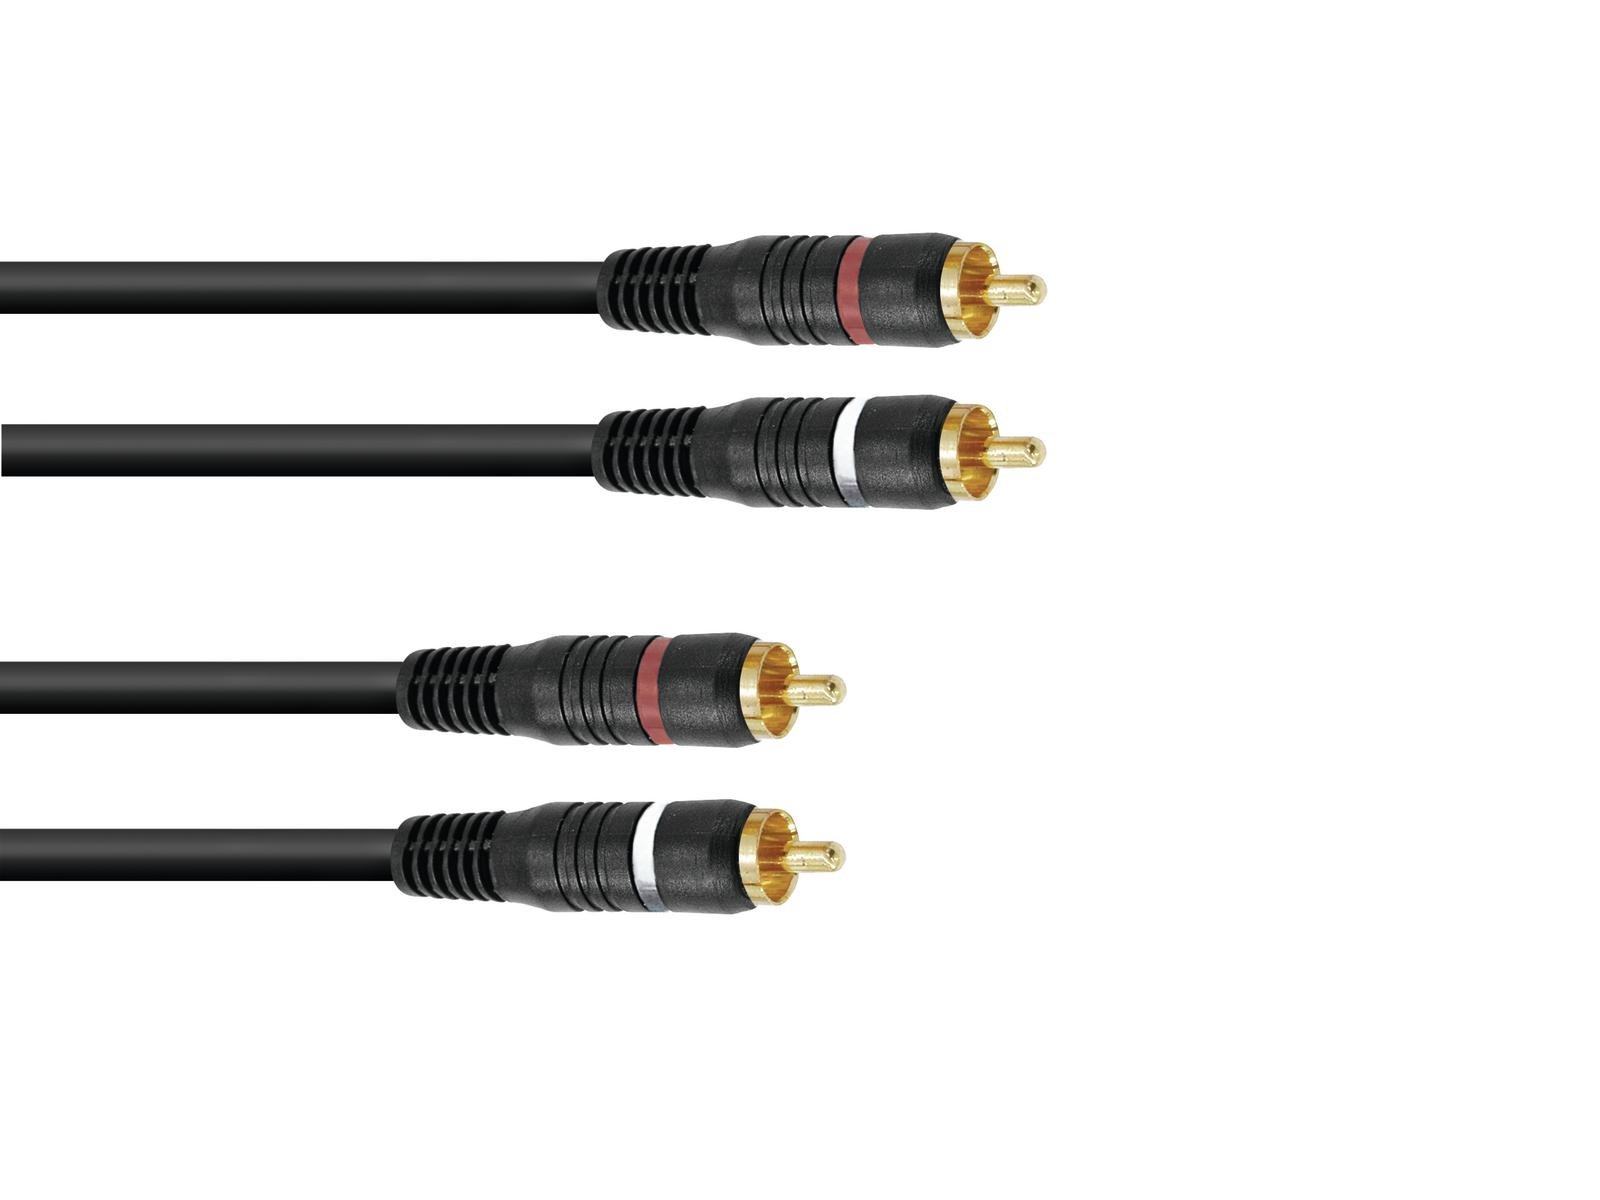 Kabel CC-150 2x 2 Cinch 15 m HighEnd